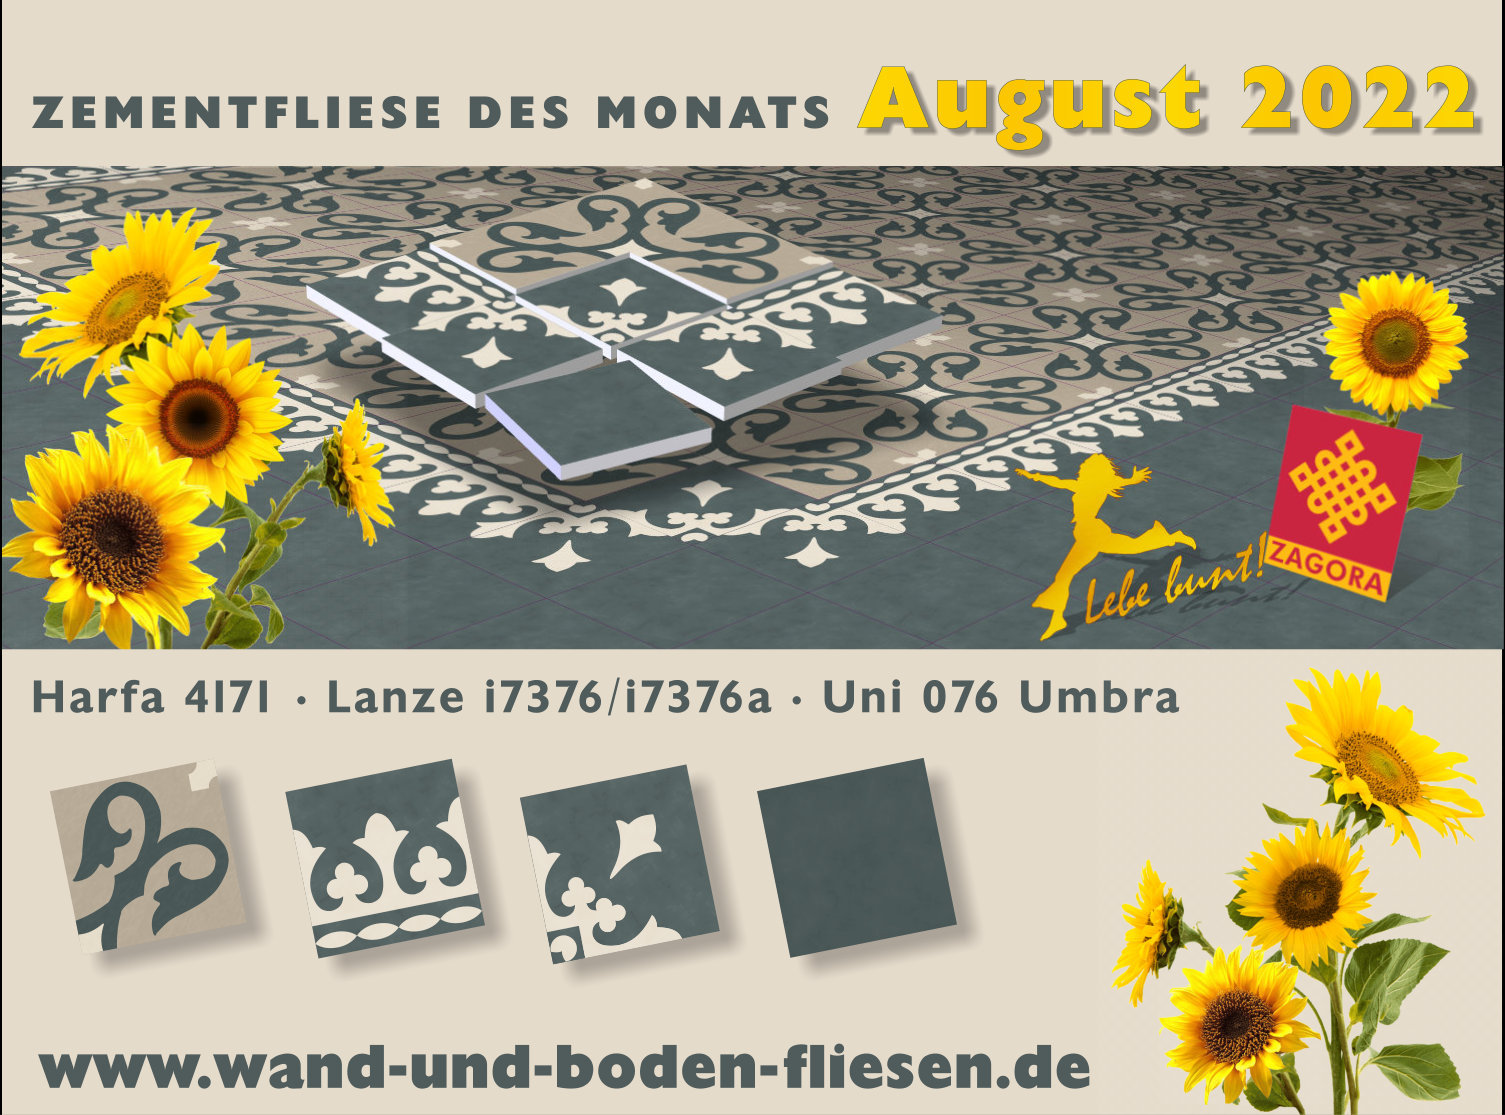 ZF-4171-Zementfliesen_Harfa-weiss-beige-gruen_Jugendstil-2022-August_werbung